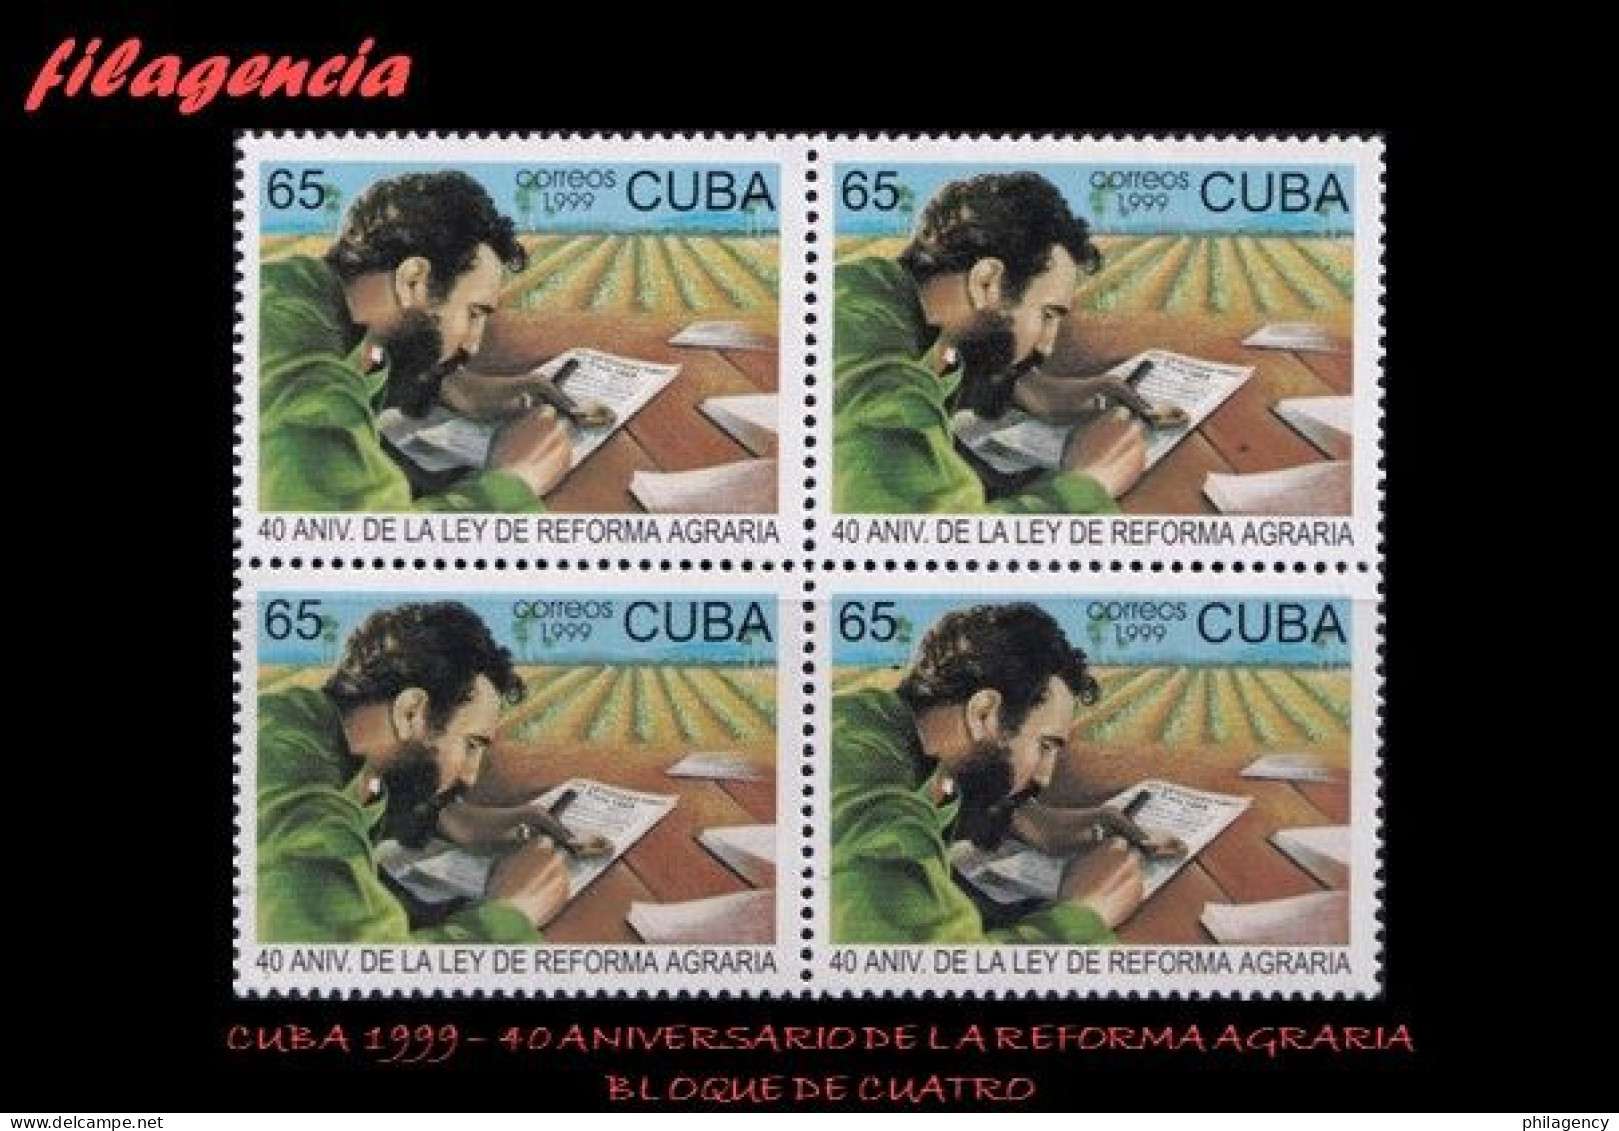 CUBA. BLOQUES DE CUATRO. 1999-14 40 ANIVERSARIO DE LA LEY DE REFORMA AGRARIA - Ungebraucht